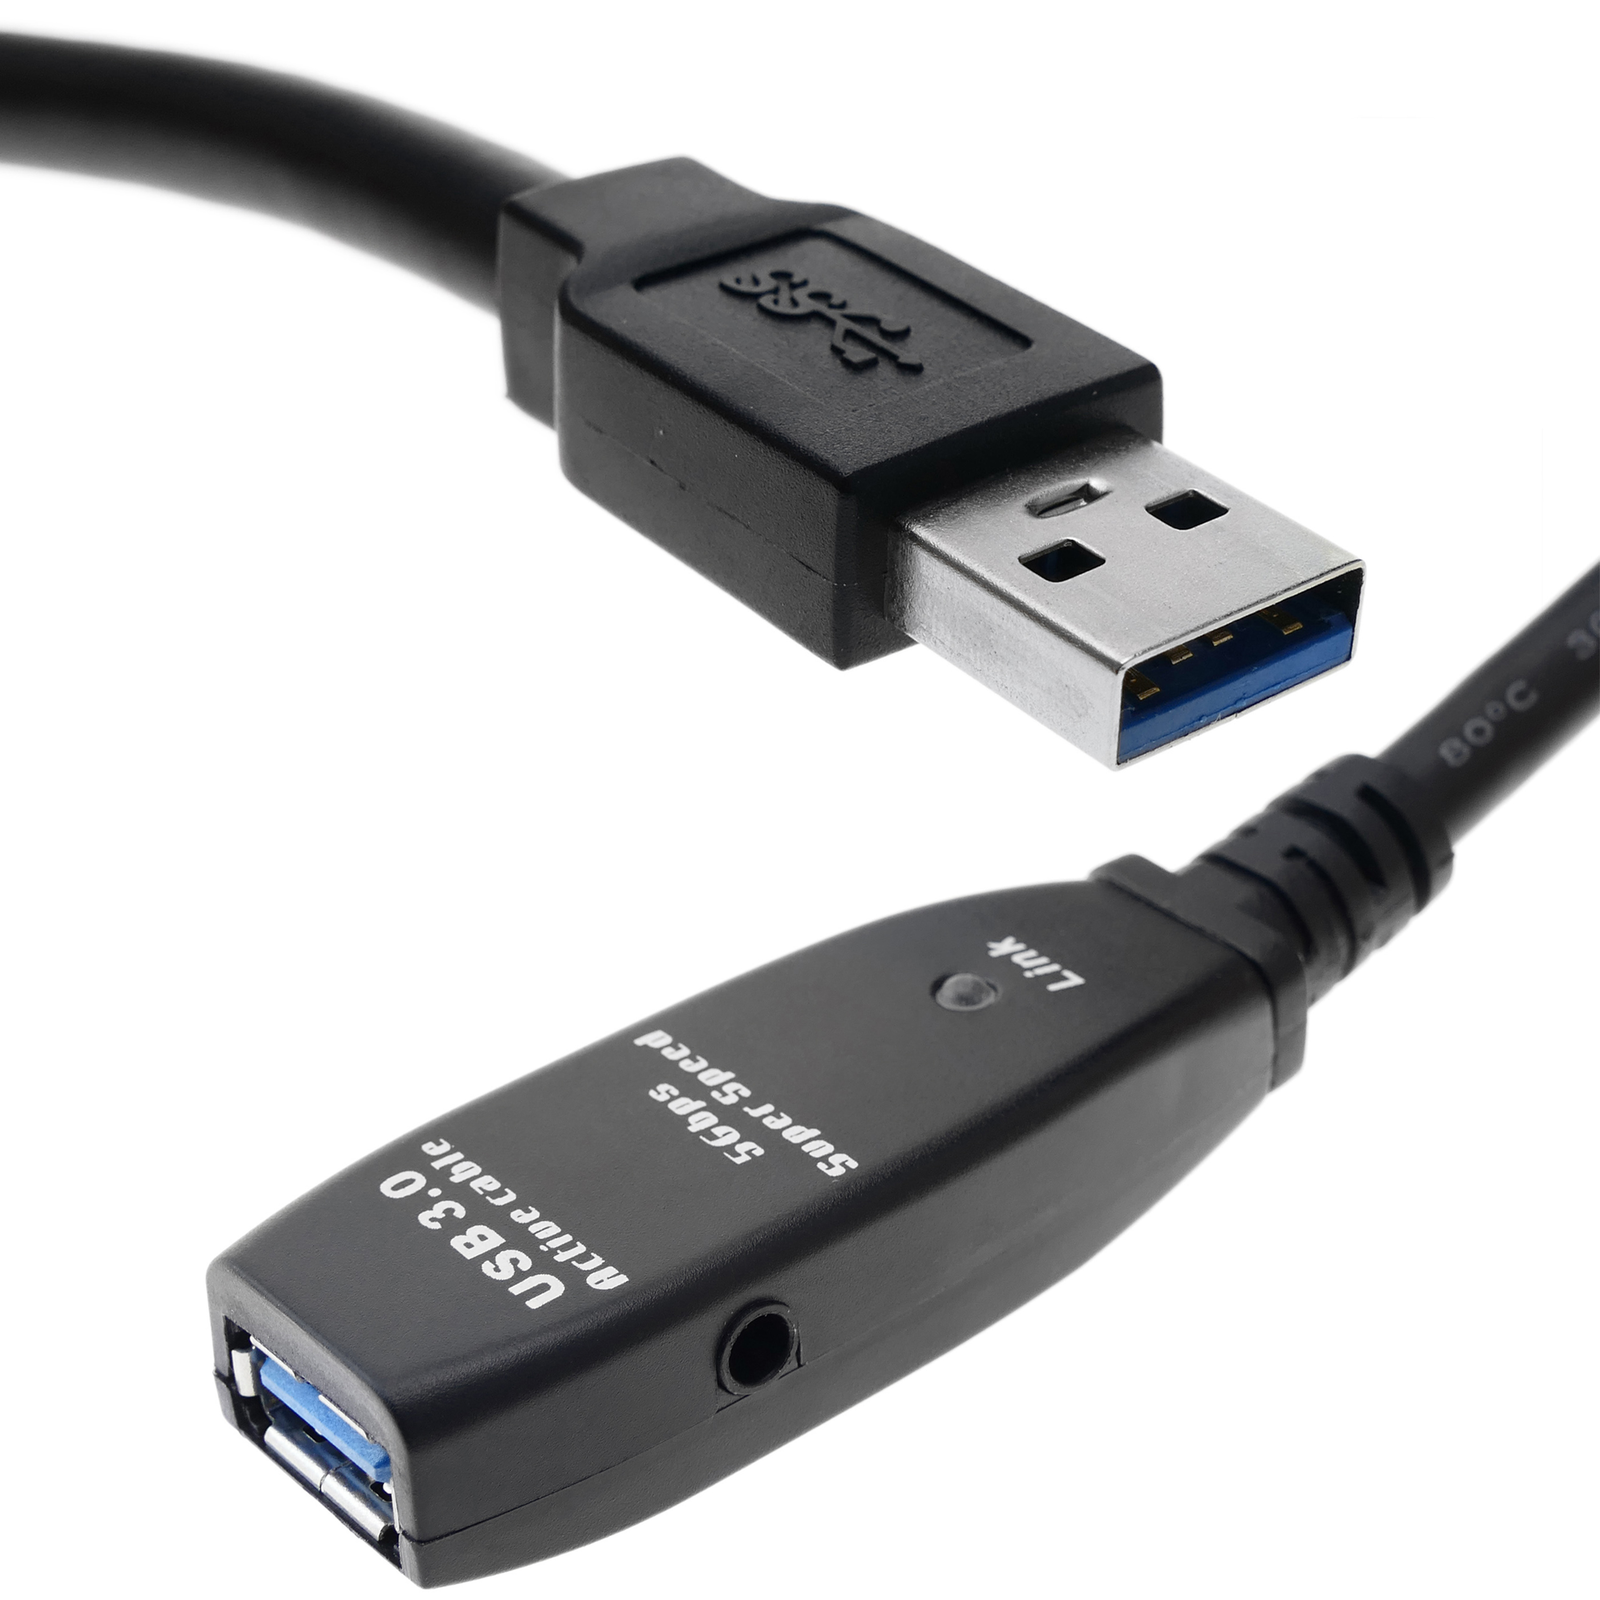 Cable alargador USB 3.0 de 2 m tipo A Macho a Hembra - Cablematic